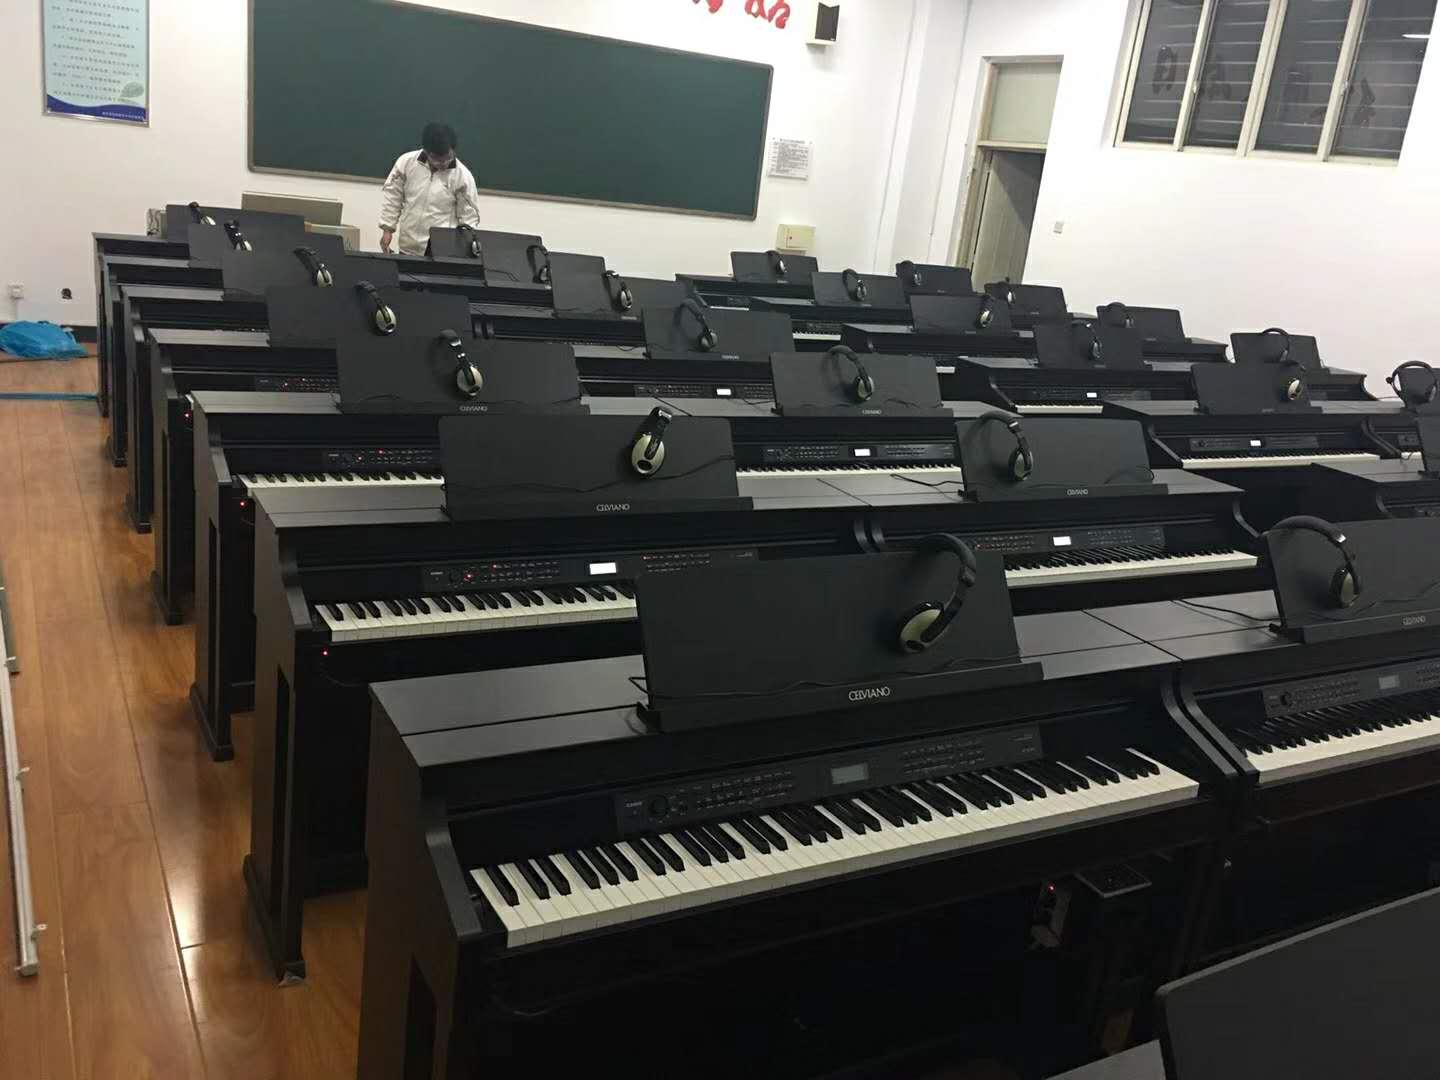 金瑞冠达数字音乐教室电钢琴教学系统